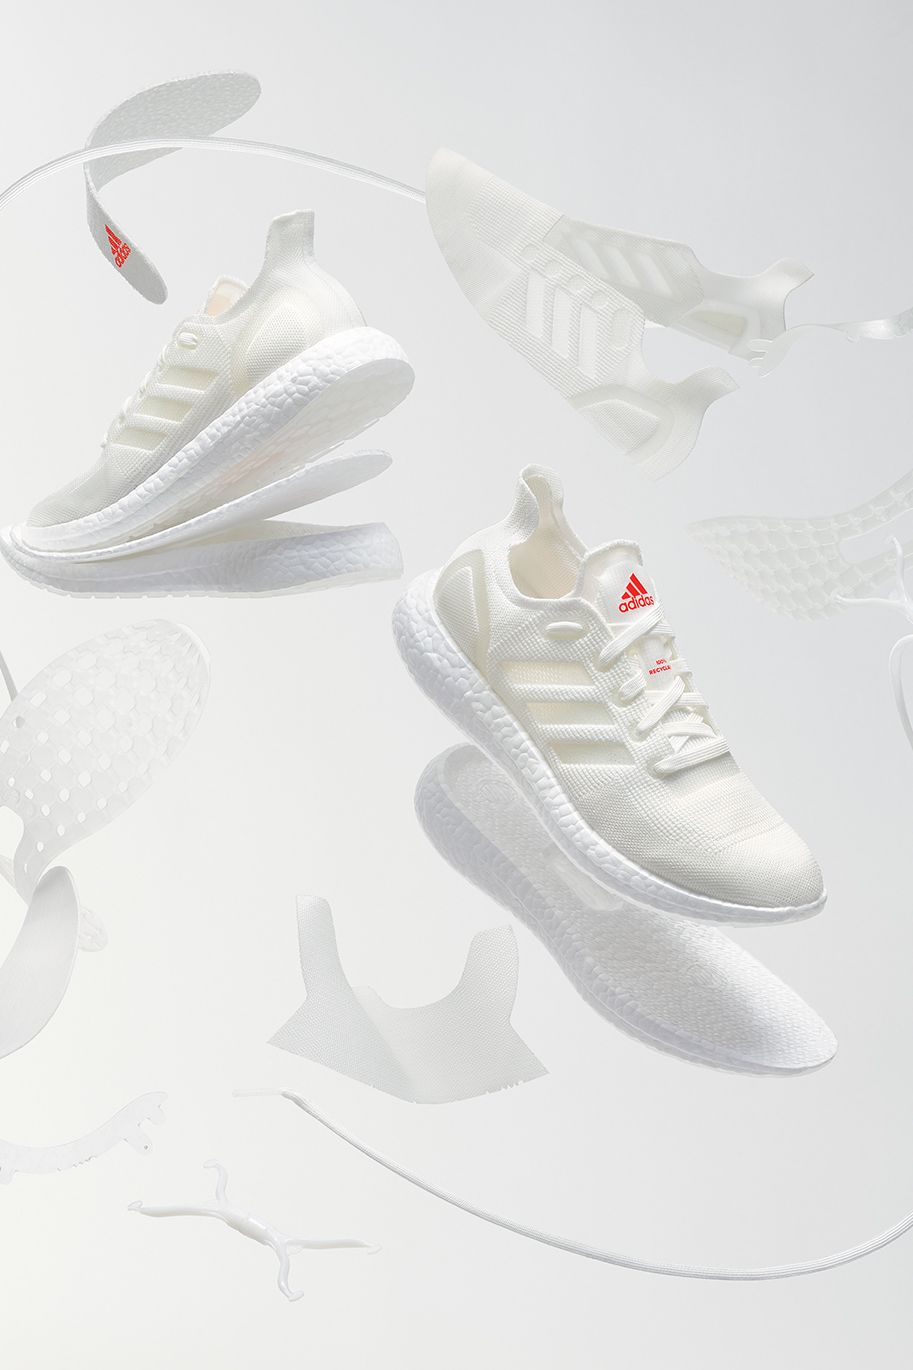 Adidas is making a shoe CNN